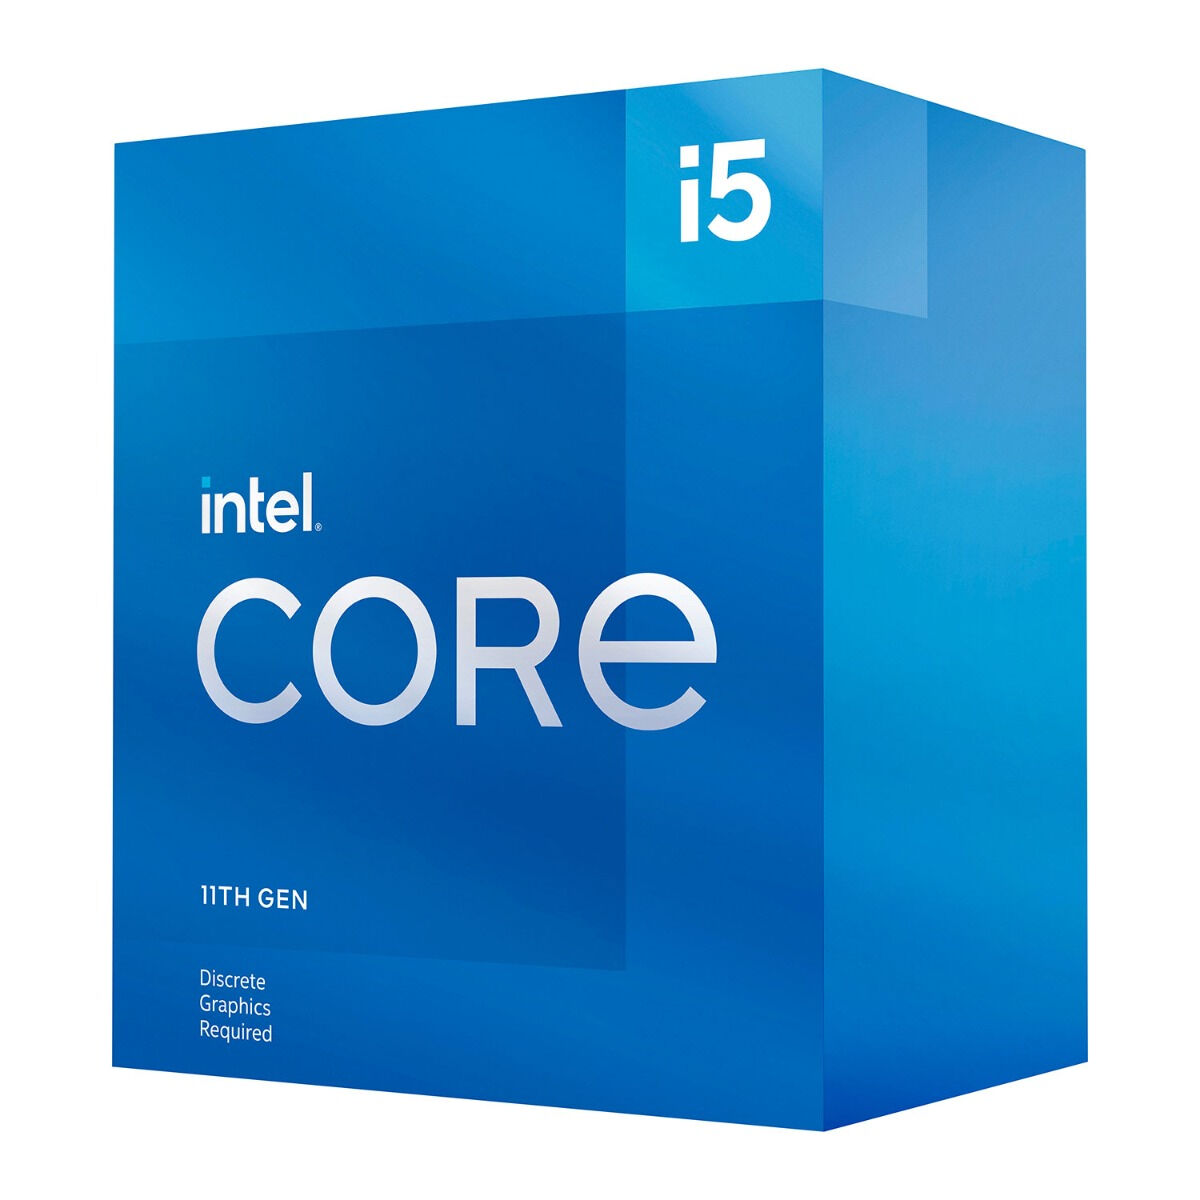 Intel Processador Intel Core I5-11400f 6-core 2.6ghz C/ Turbo 4.4ghz Skt1200